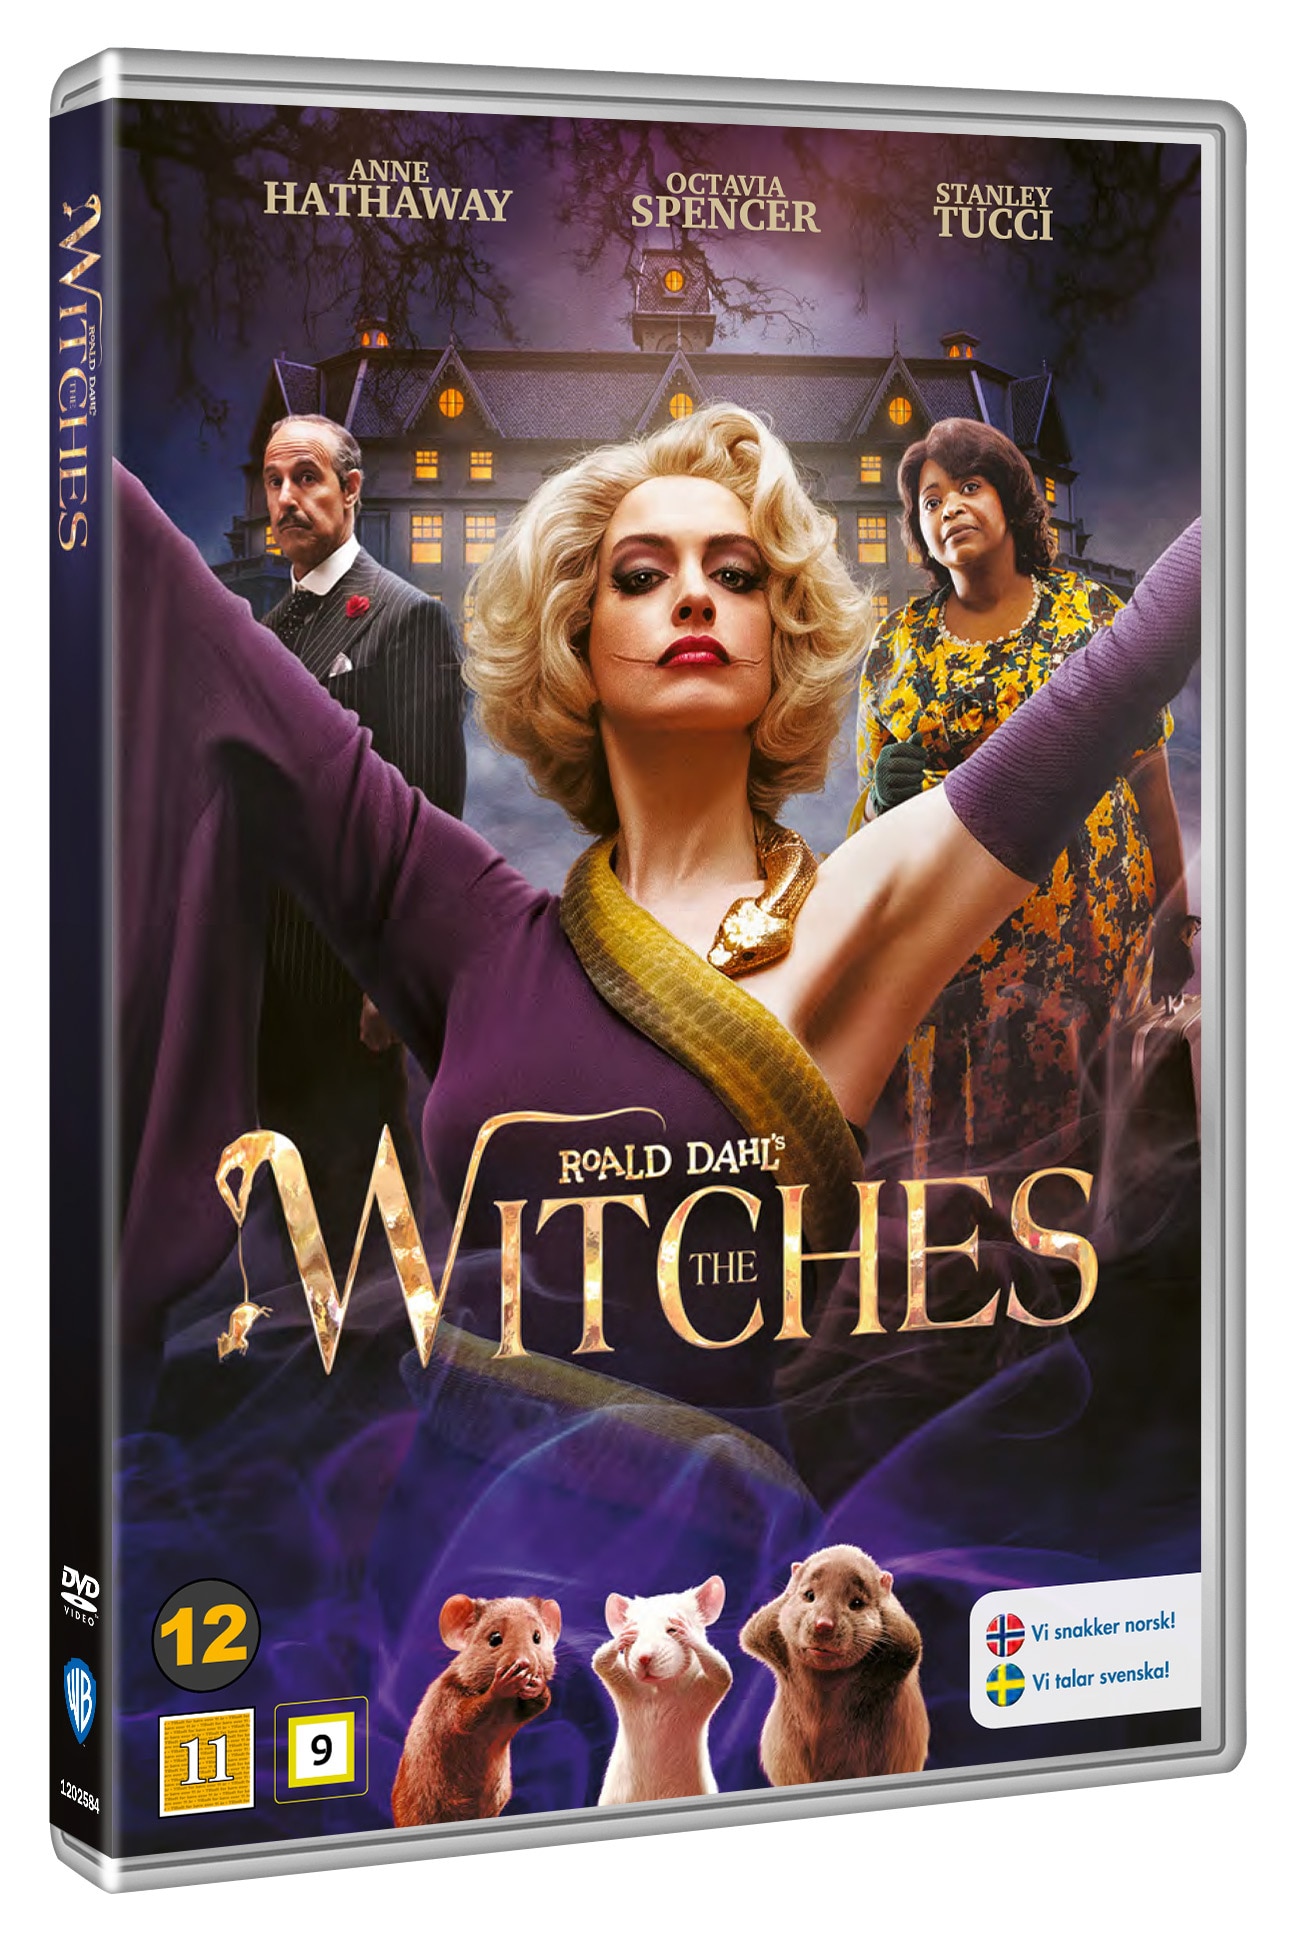 THE WITCHES (DVD) - Filmer - Elgiganten